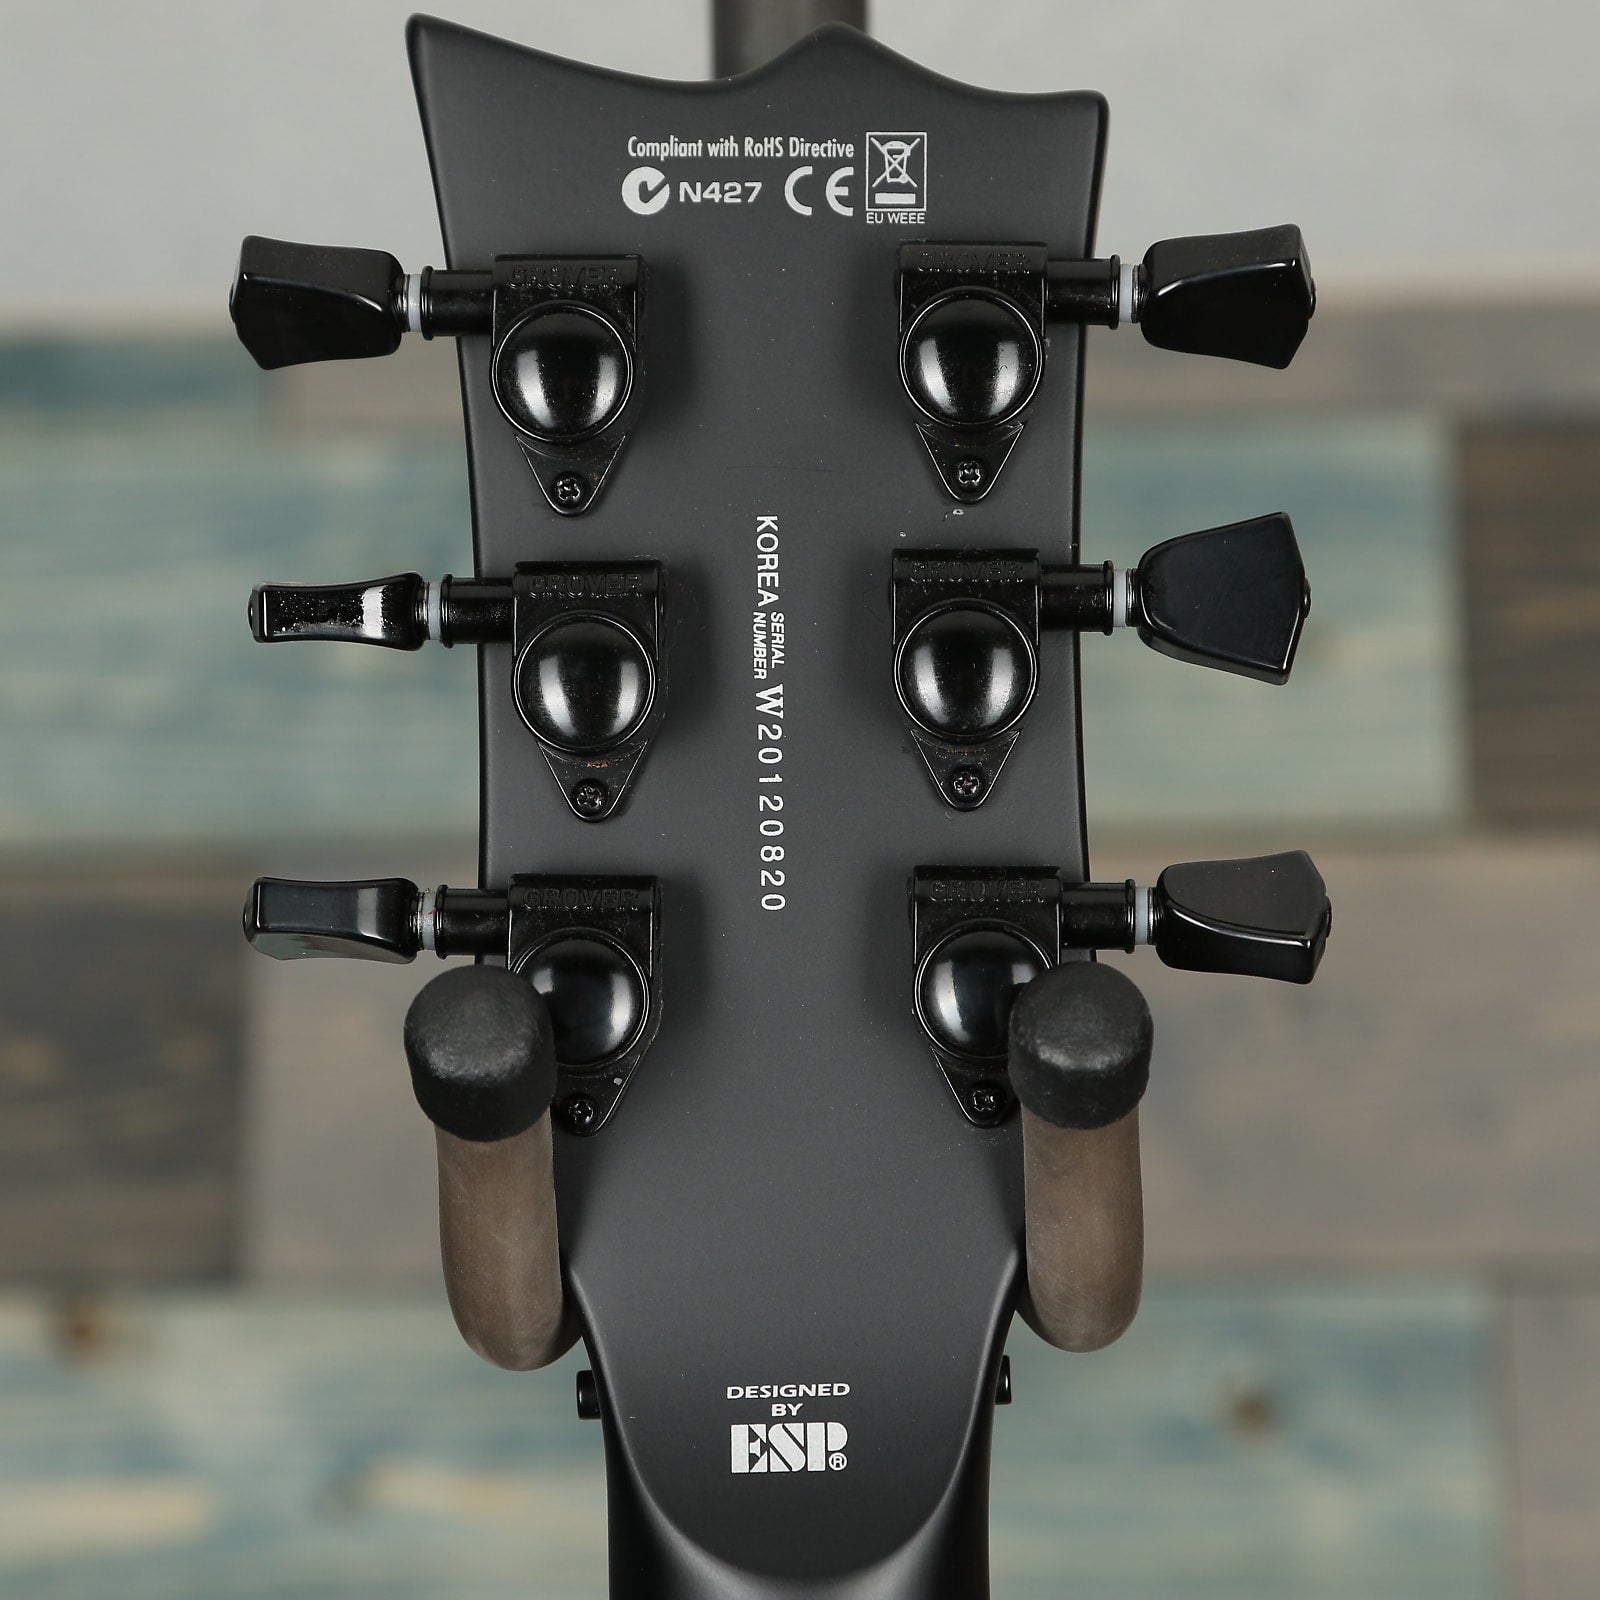 ESP LTD EC-1000FR Electric Guitar - Black Satin